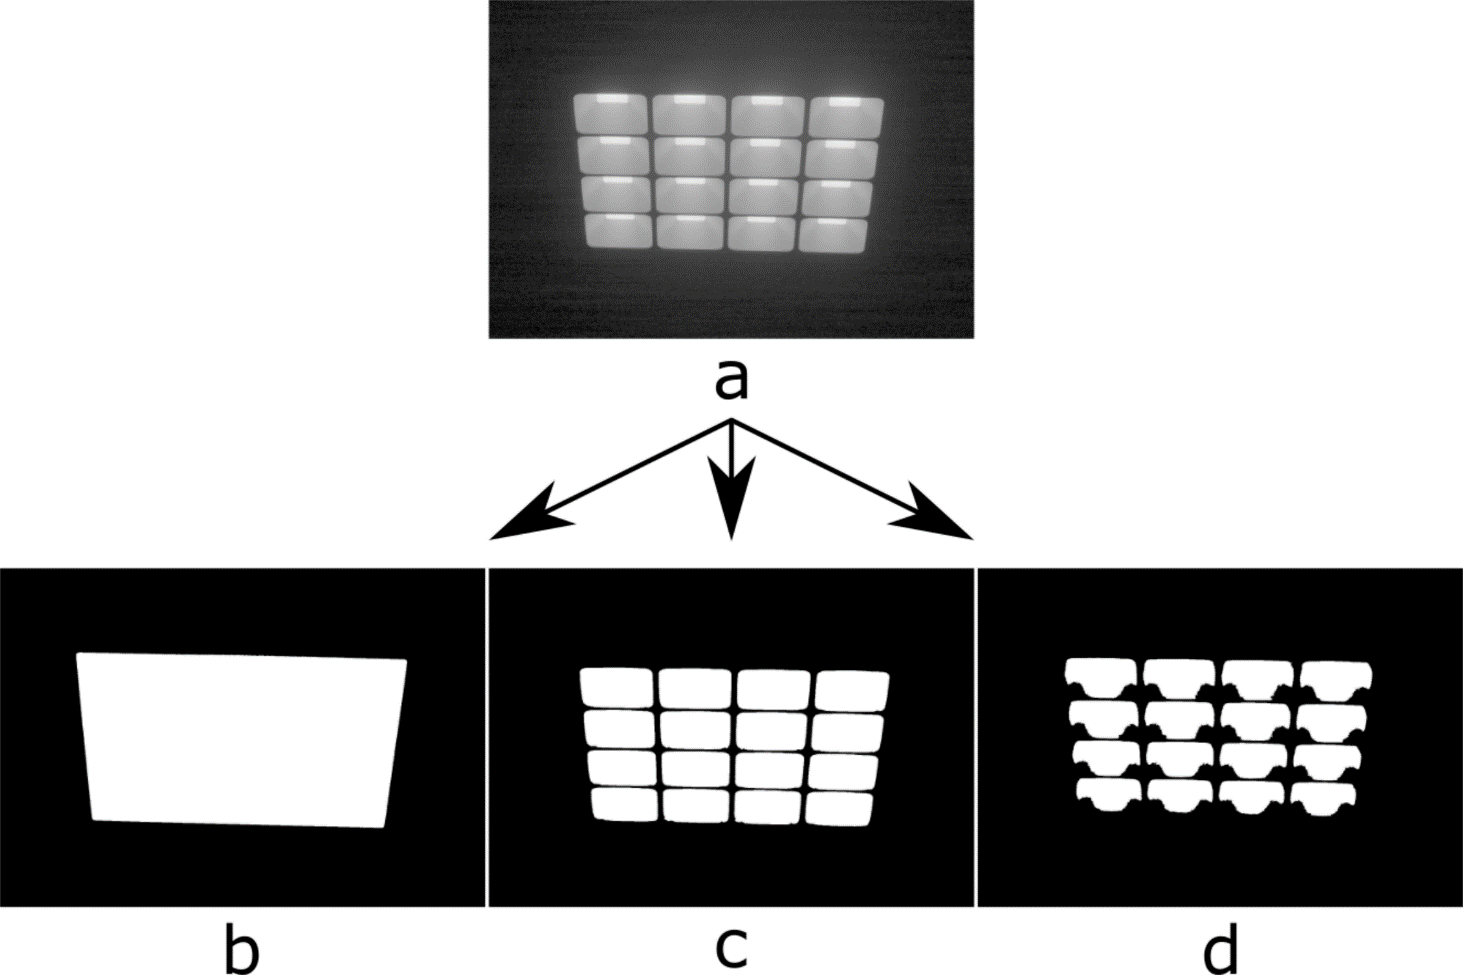 Opsplitsen van een niet-uniform verlichtingstoestel in verschillende lichtelementen Beschouw